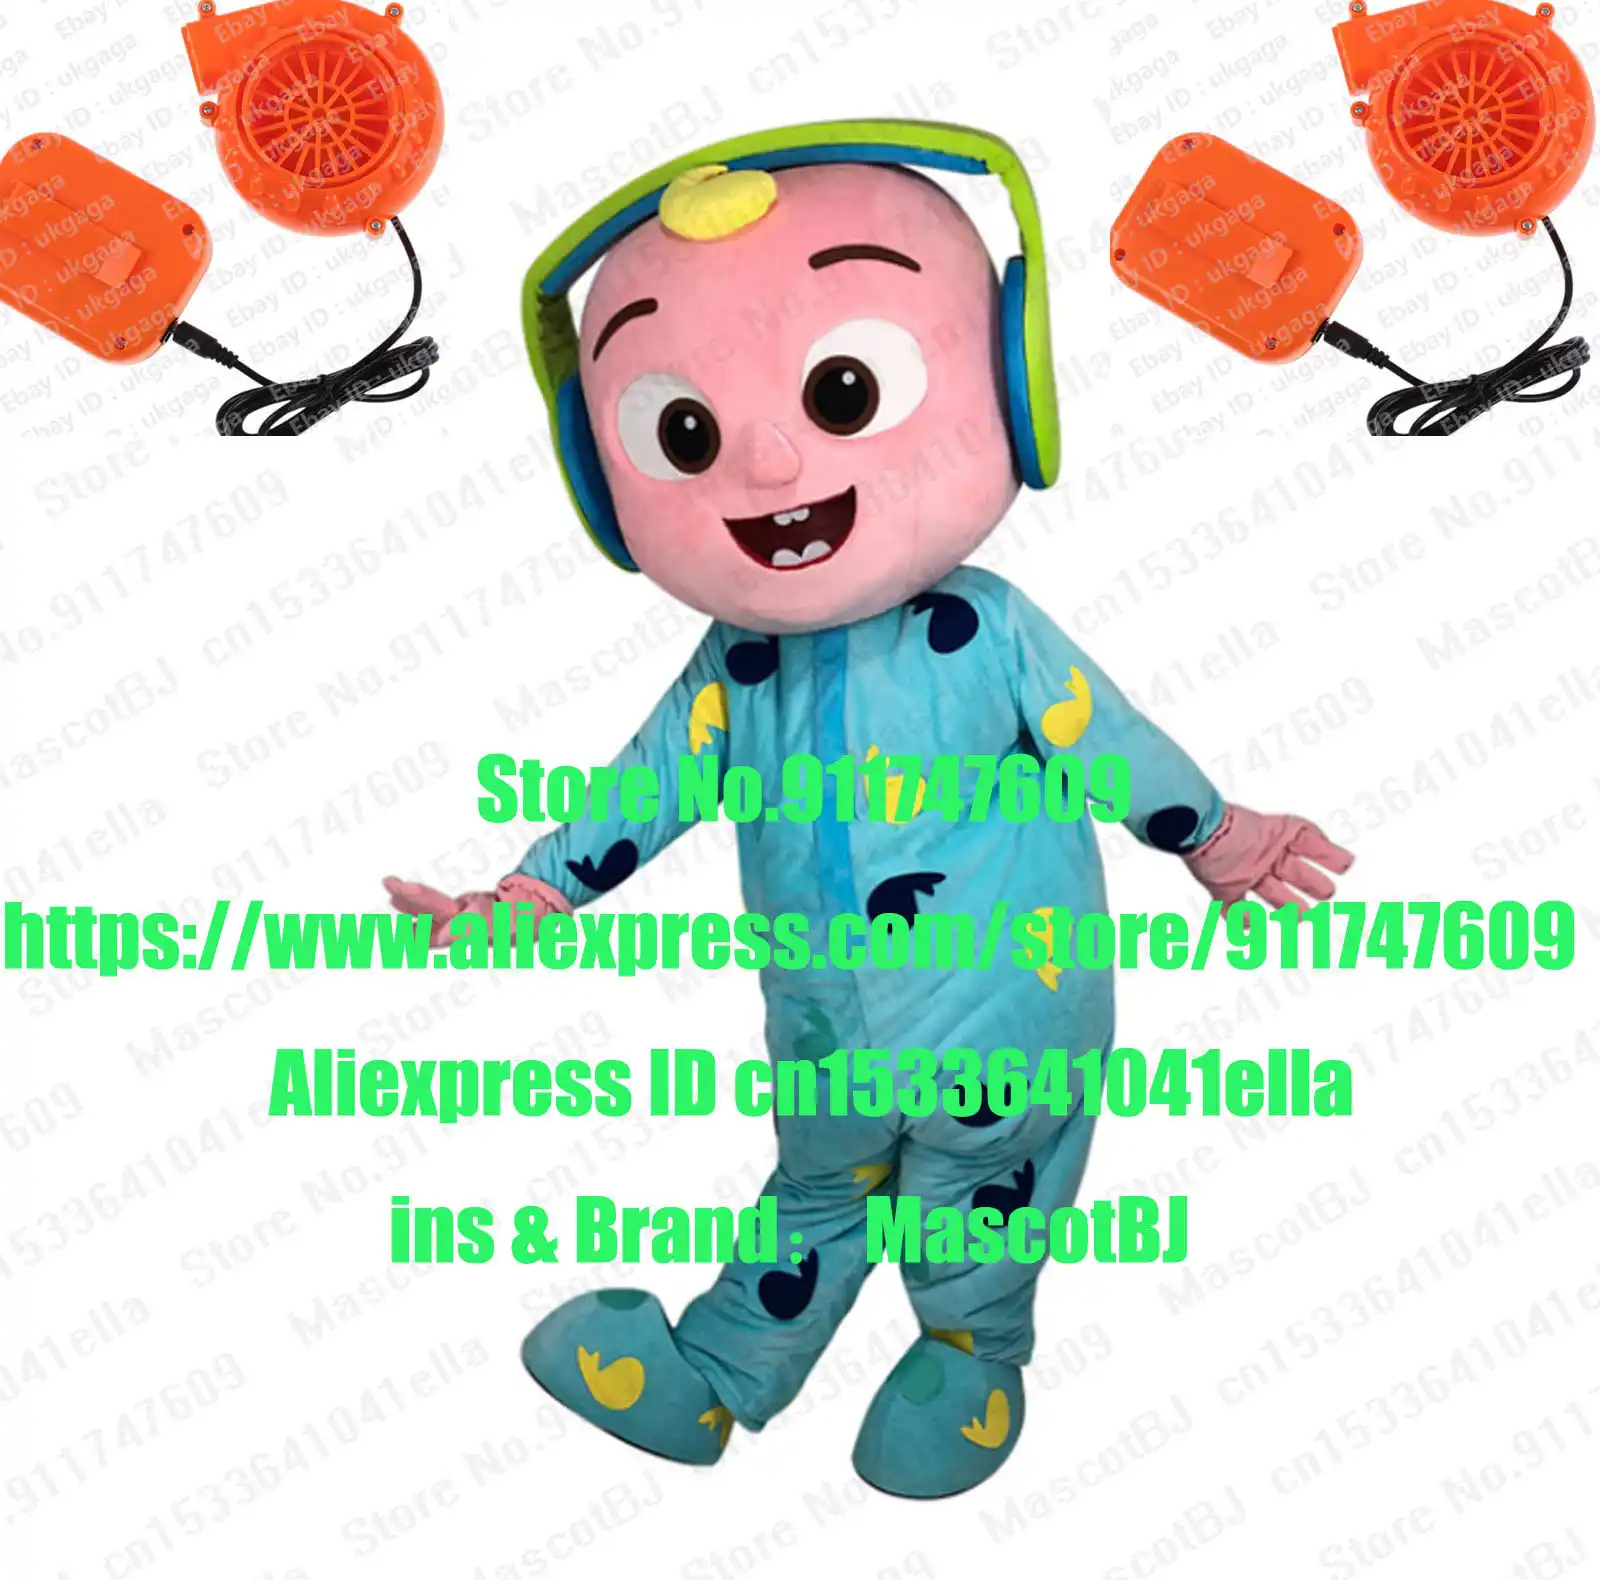 Cocomelon Free Fans Headset Baby Jj Mascot Costume Adult Cartoon Character Size Xxs S M L Xl Xxl 3xl 5xl Mascot Aliexpress